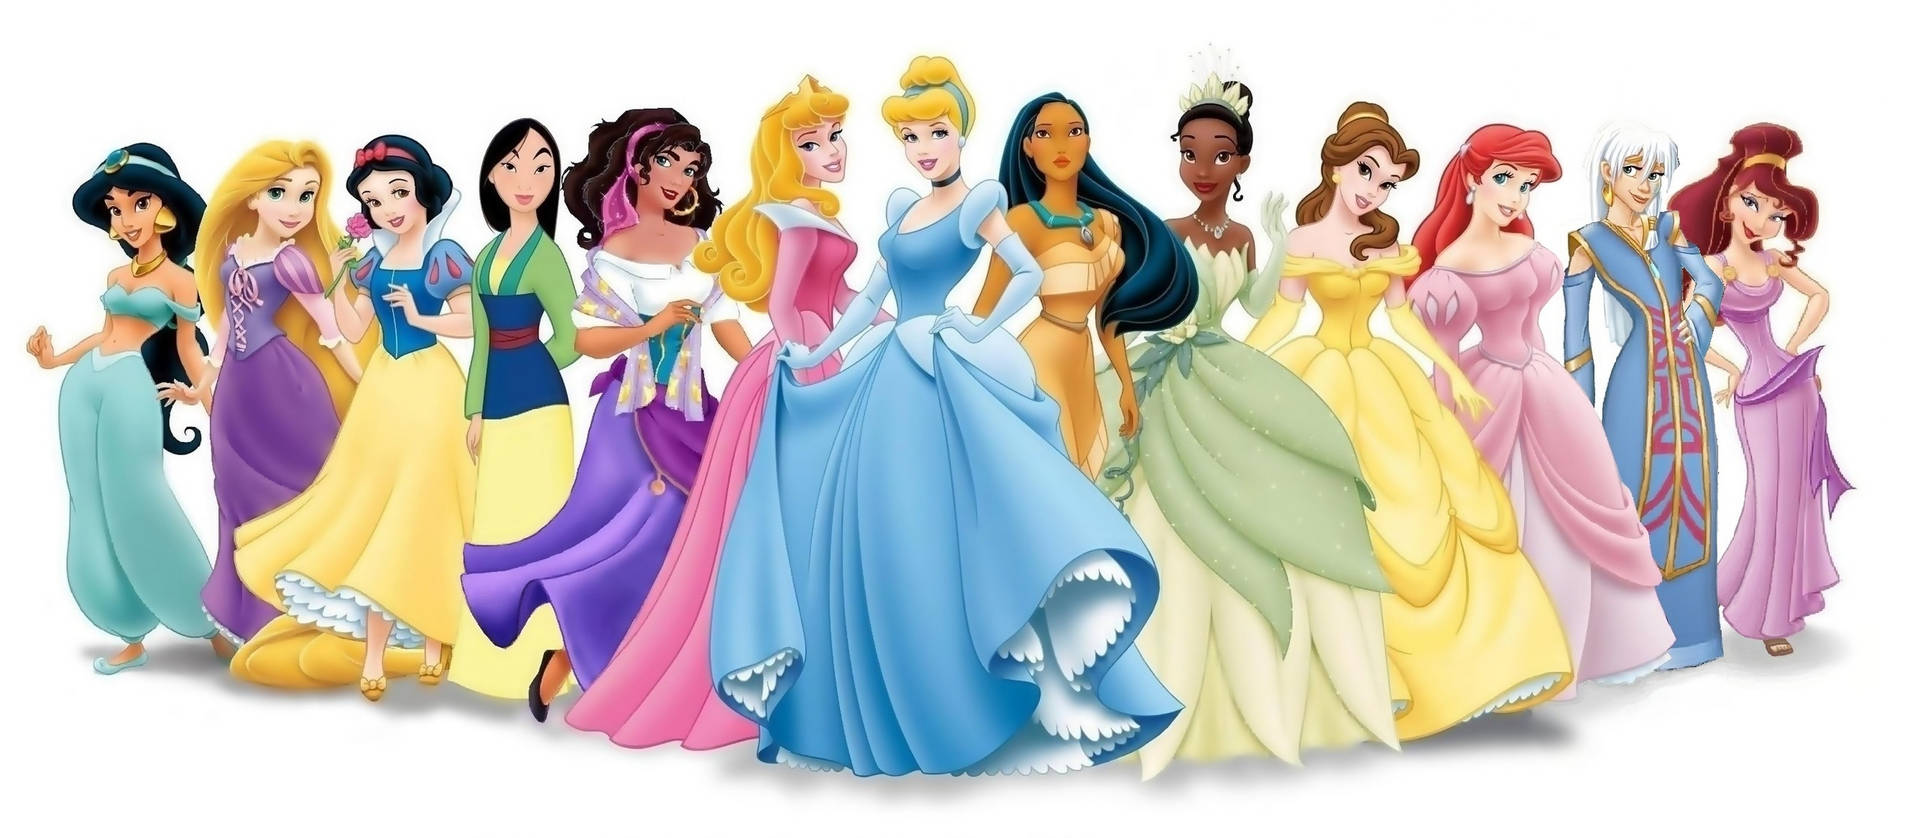 Disney Princesses In Colorful Dresses